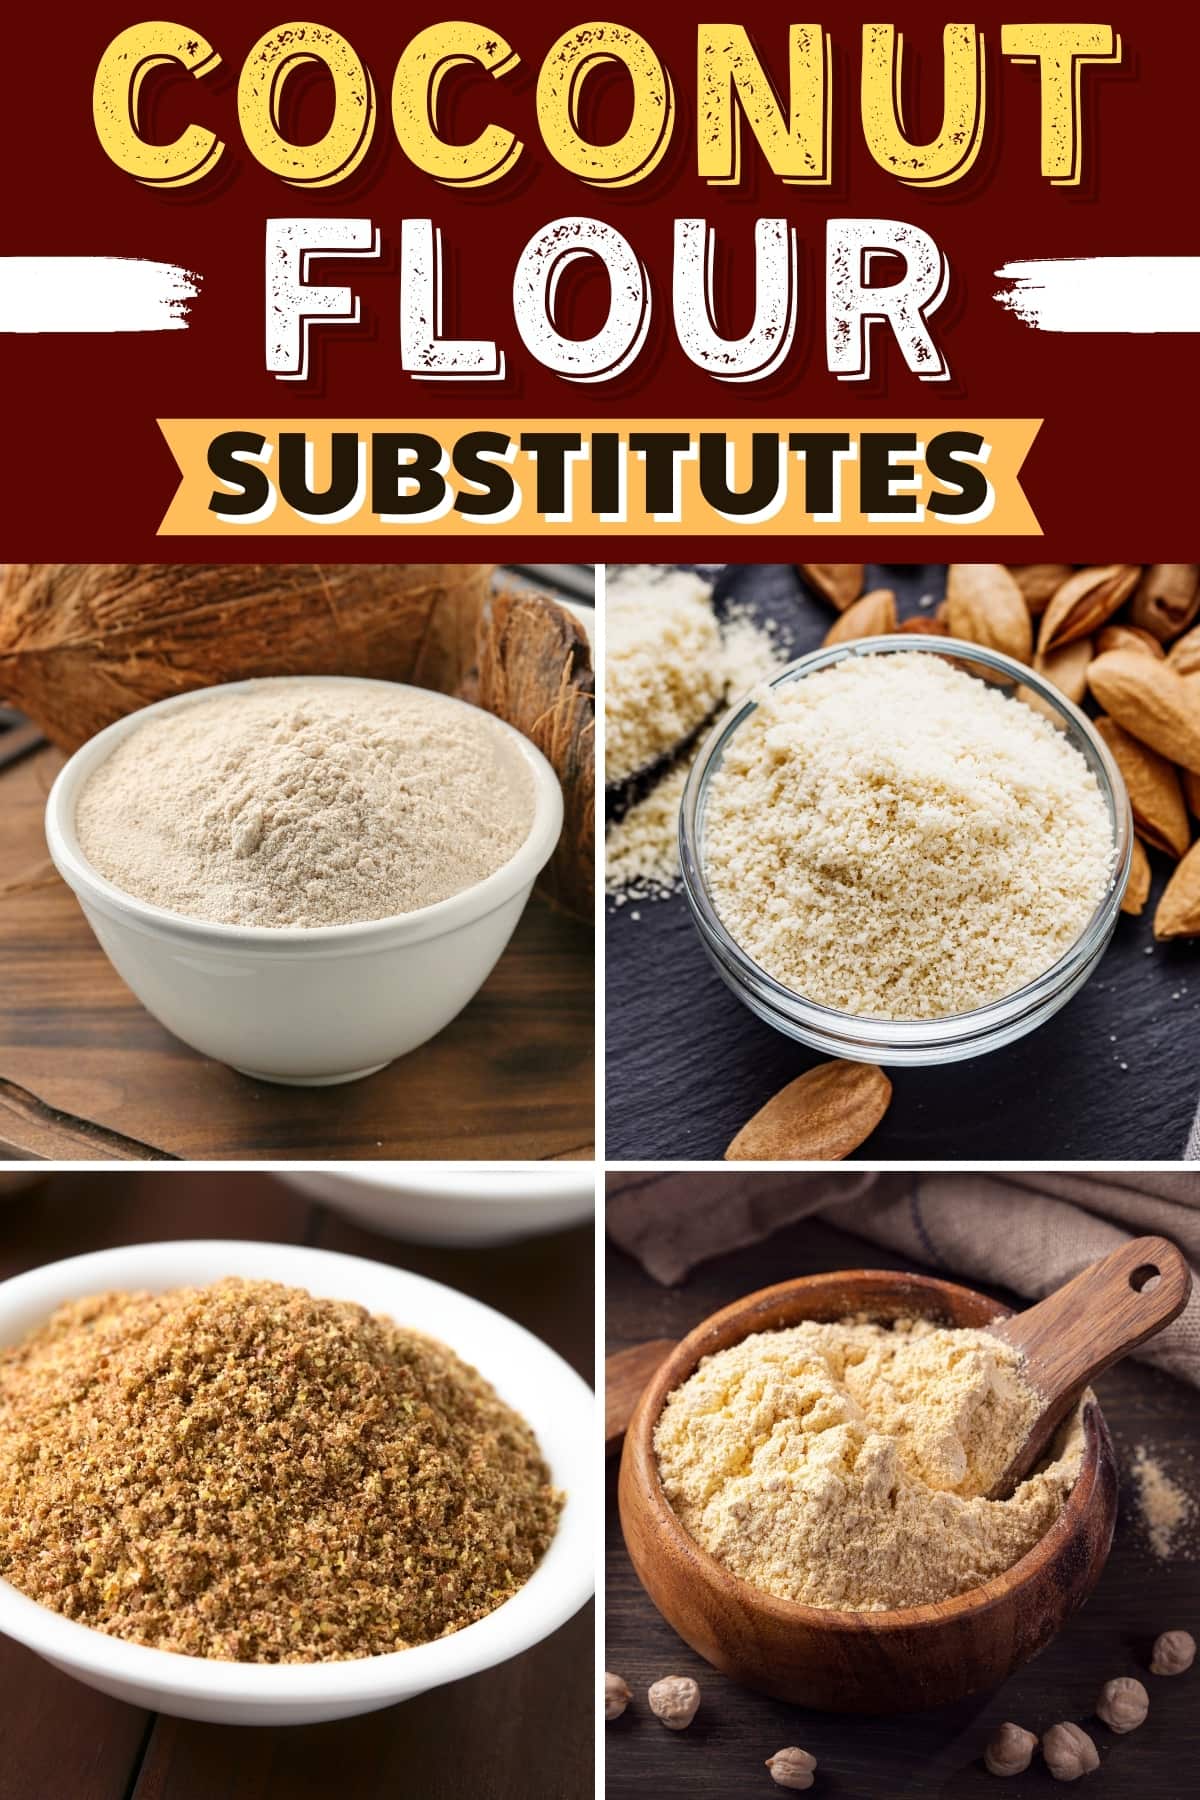 Coconut Flour Substitutes